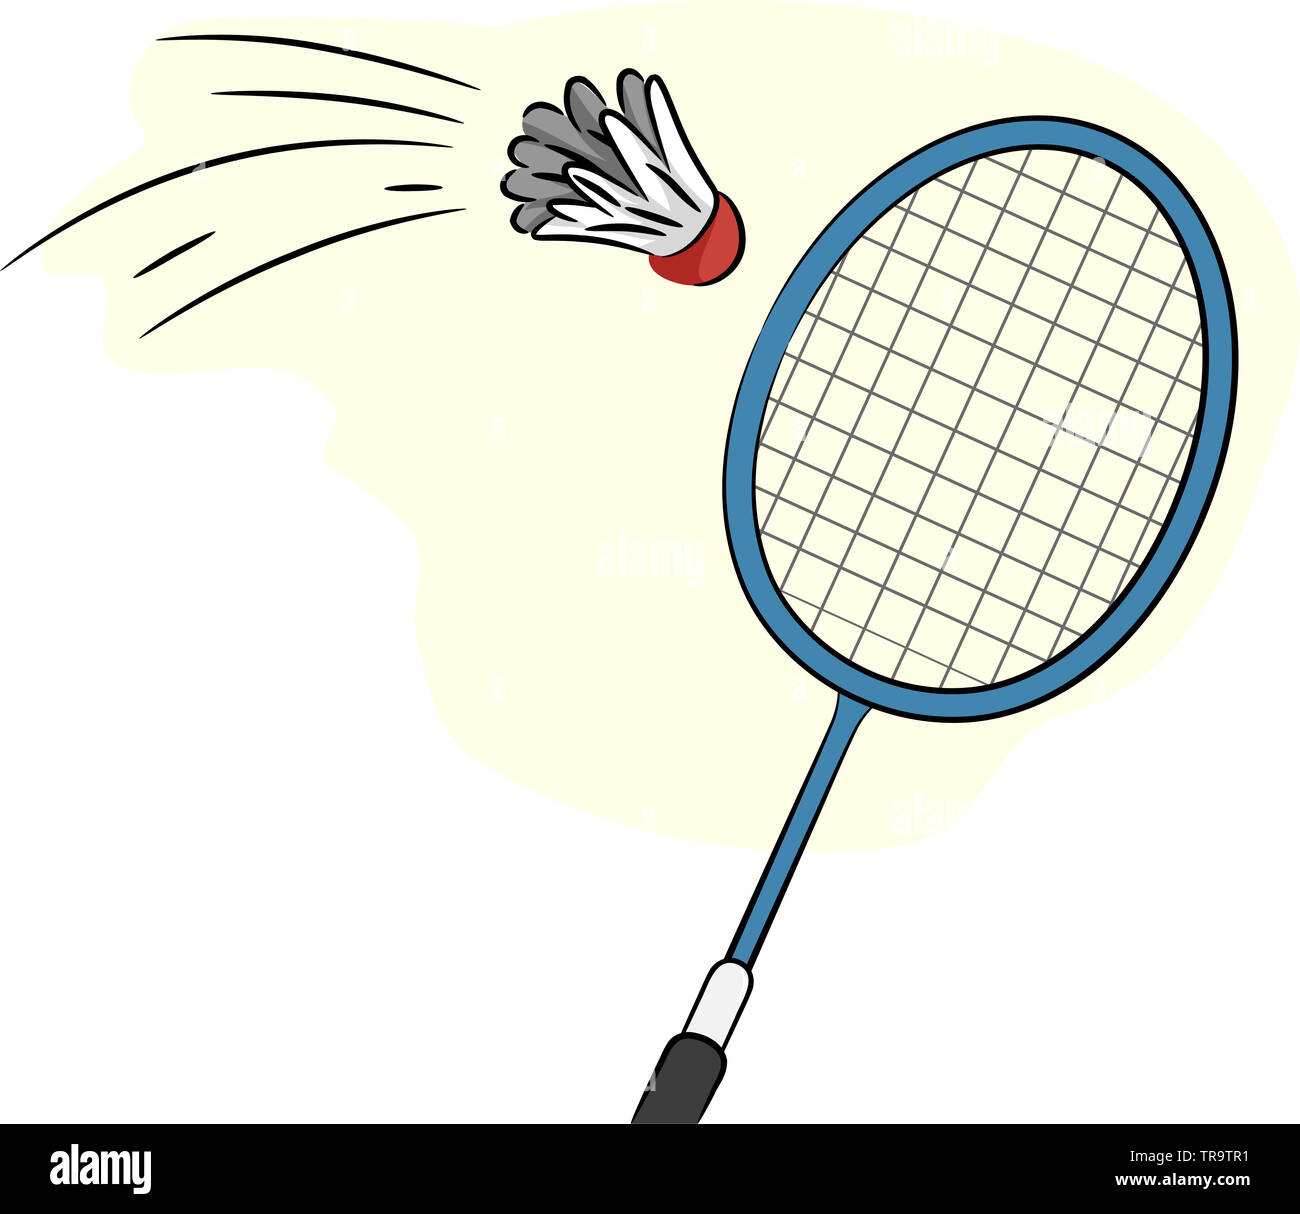 Abbildung: Badminton Schläger zu einem Federball Hit Stockfotografie - Alamy